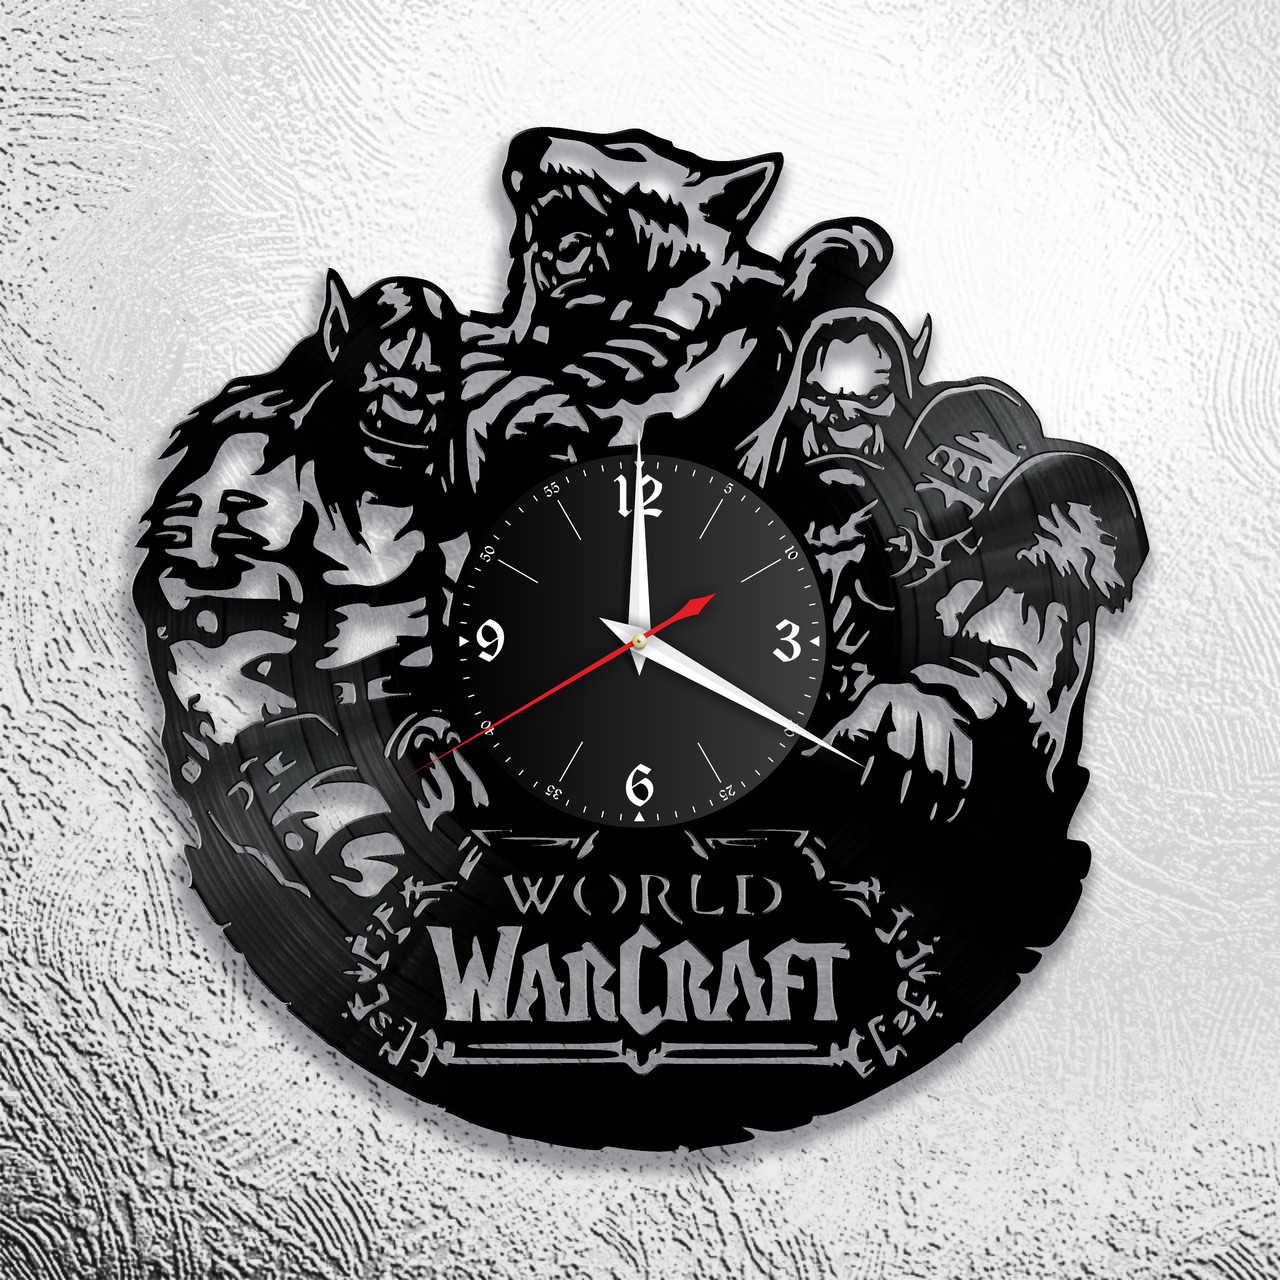 Оригинальные часы из виниловых пластинок  "Warcraft" версия 1, фото 1